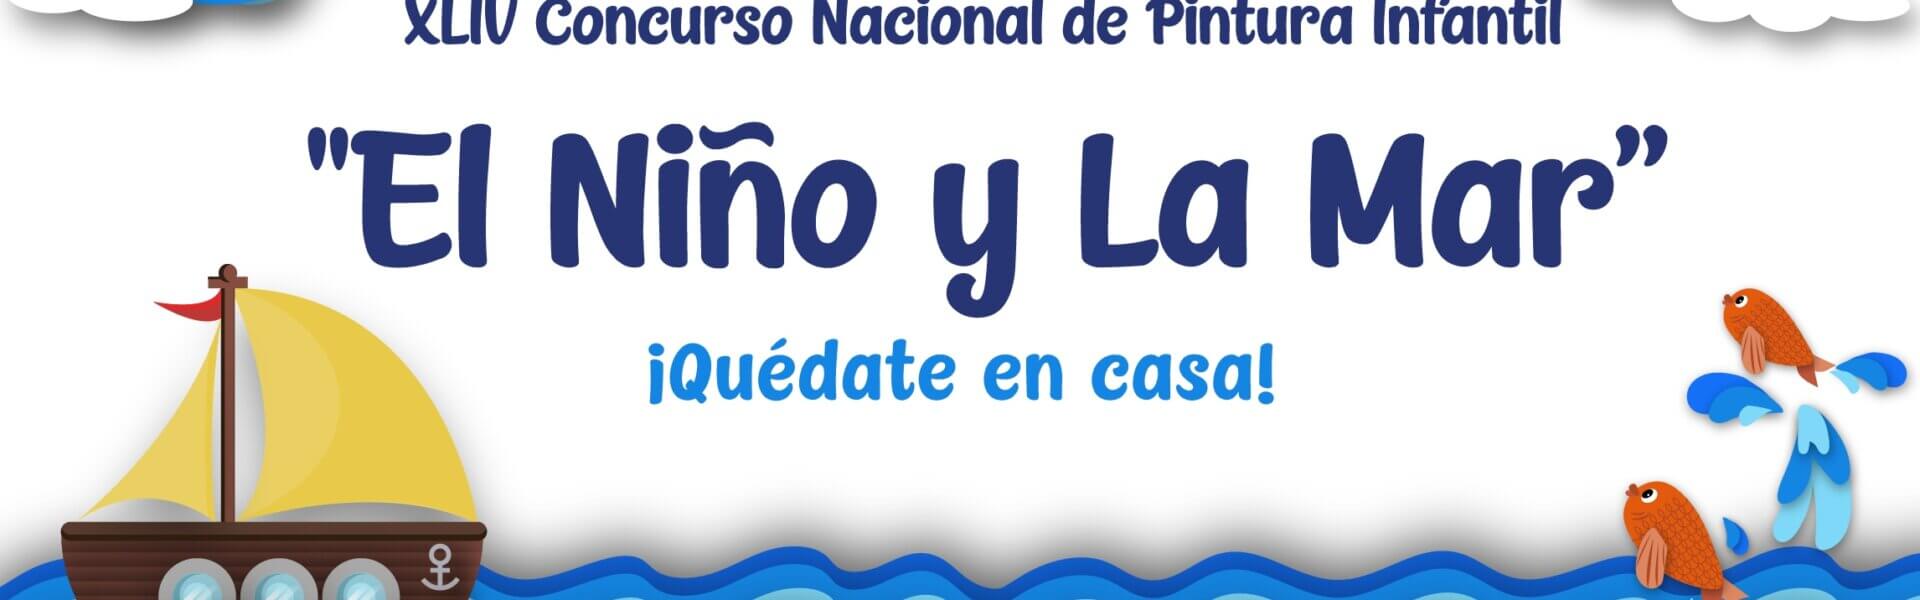 Invitan a participar en El Niño y la Mar